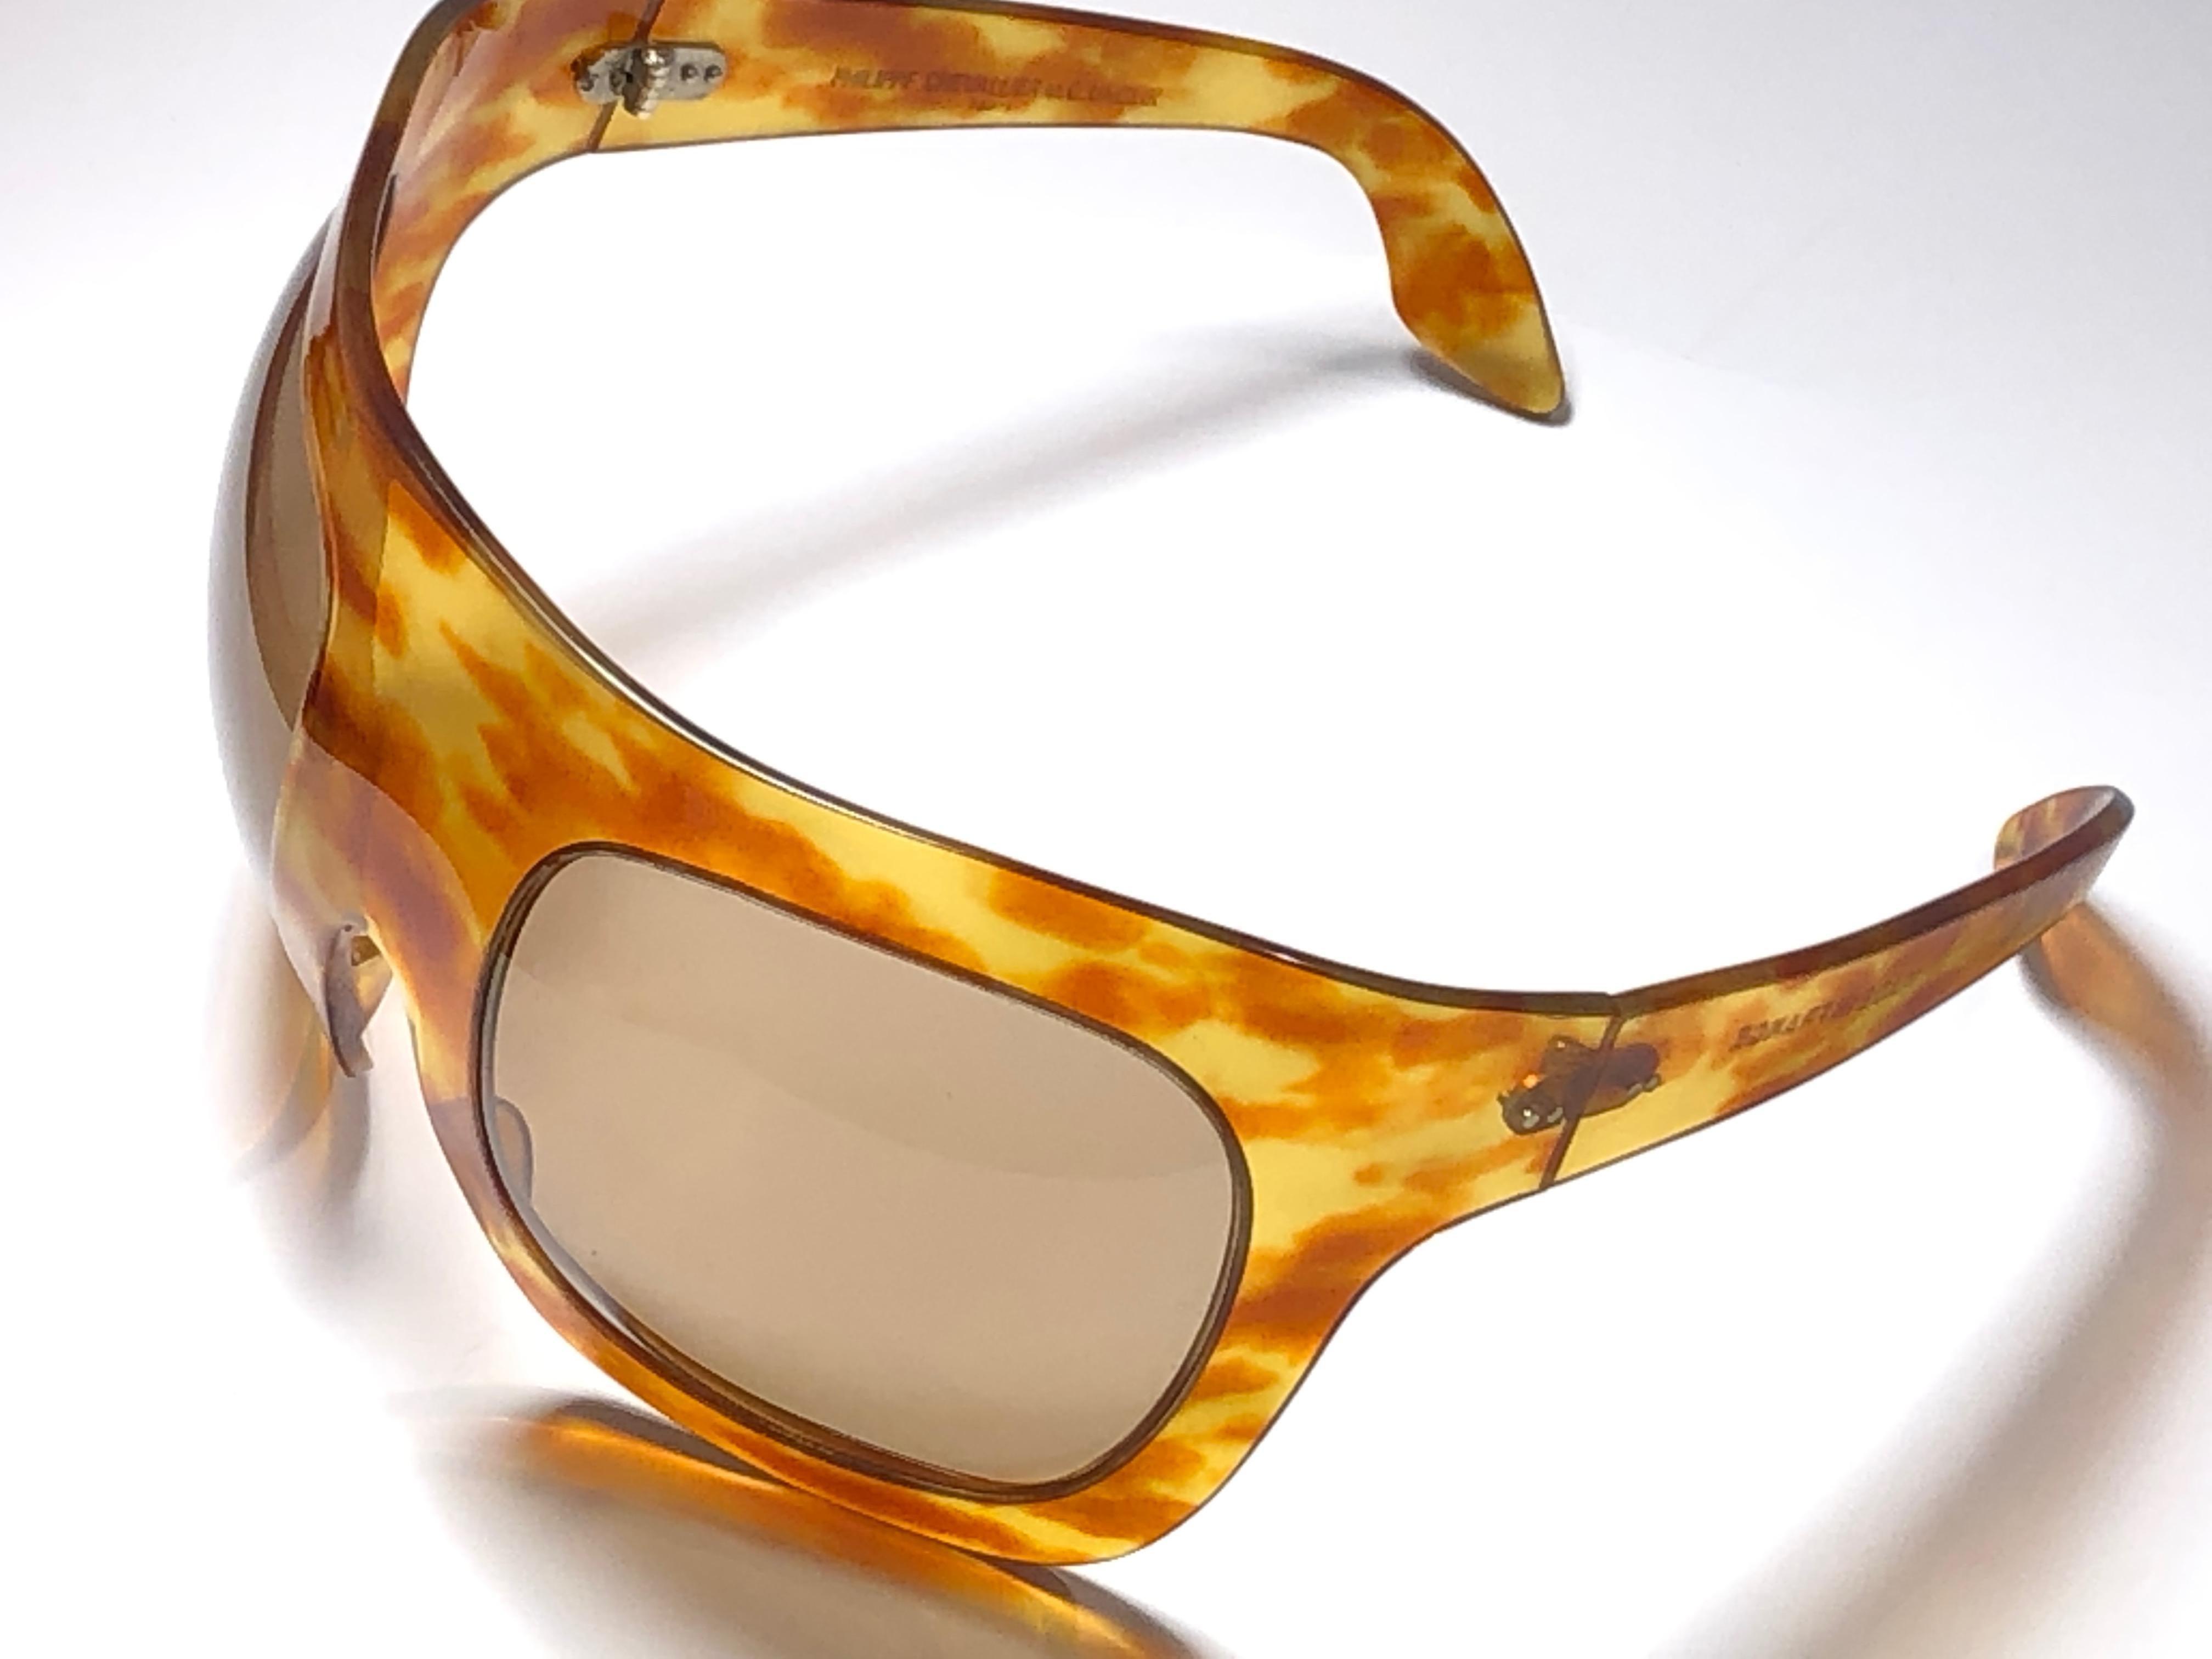 Nouvelle pièce de collection rare, pièce de musée vintage Philippe Chevalier, lunettes de soleil oversize en tortue légère avec verres clairs.   
Une superbe trouvaille. 

Veuillez noter que cet article peut présenter des signes mineurs d'usure de